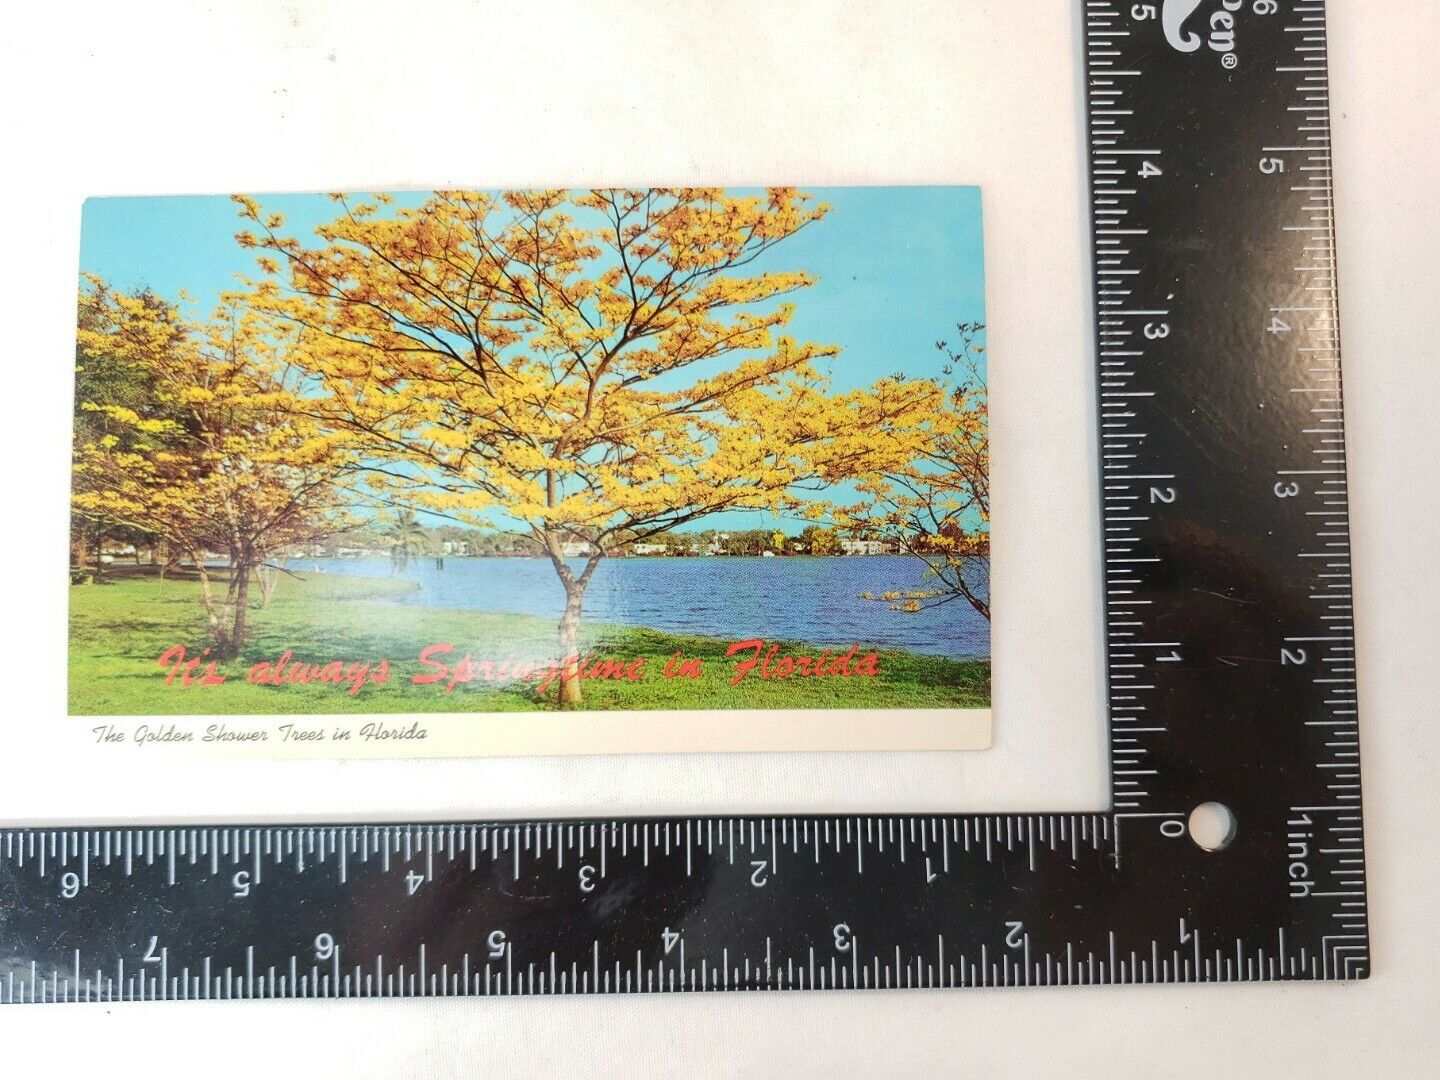 Florida FL Golden Shower Trees Springtime Postcard Old Vintage Card View Post PC